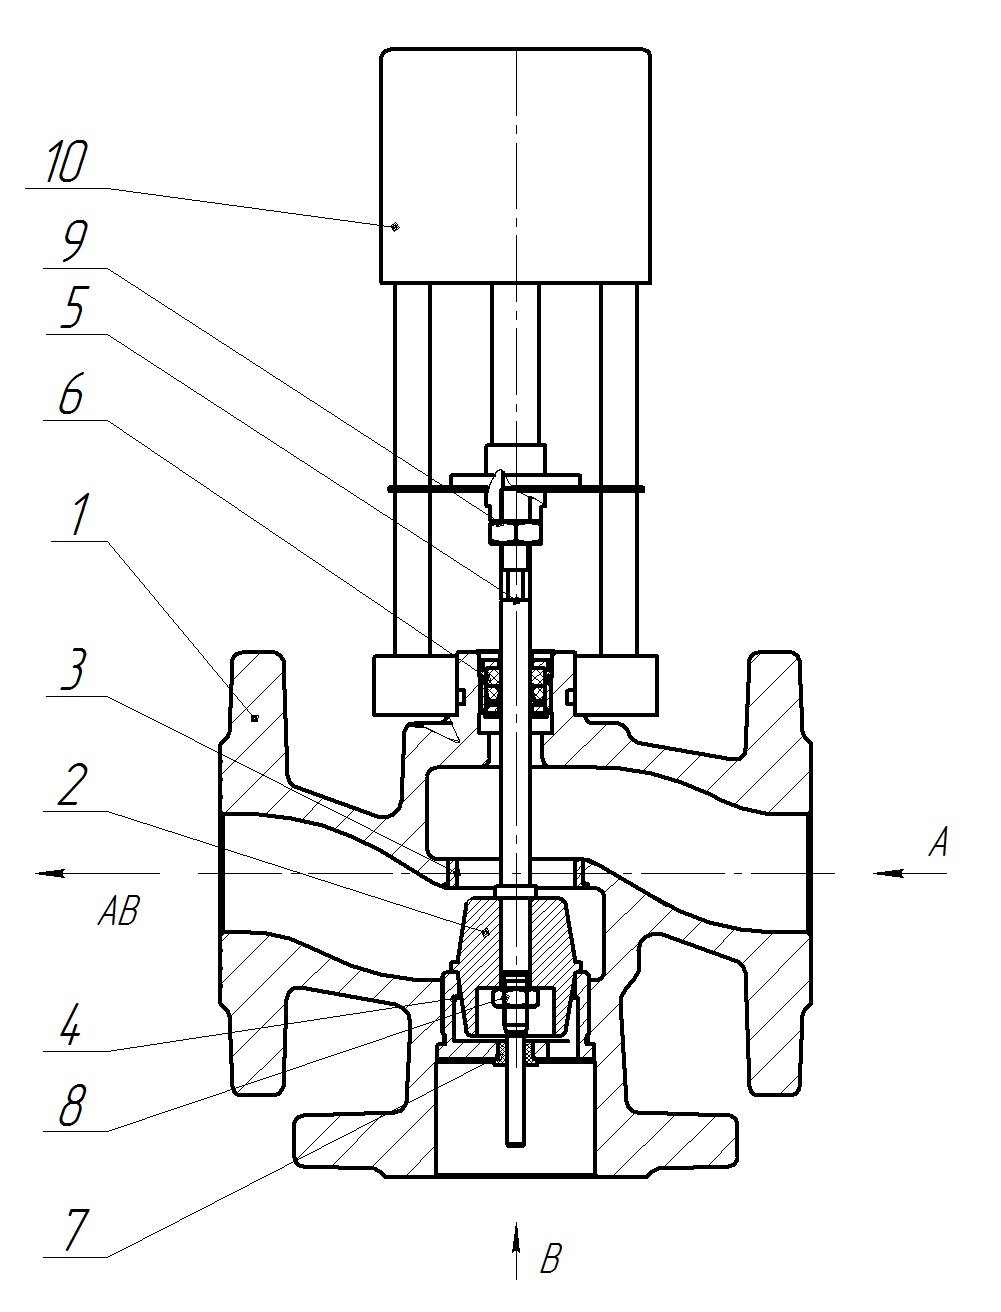 Клапан регулирующий трехходовой разделительный DN.ru 23ч901нж Ду15 Ру16 Kvs2,5 серый чугун СЧ20, фланцевый, Tmax до 150°С с электроприводом Катрабел TW-500-XD220